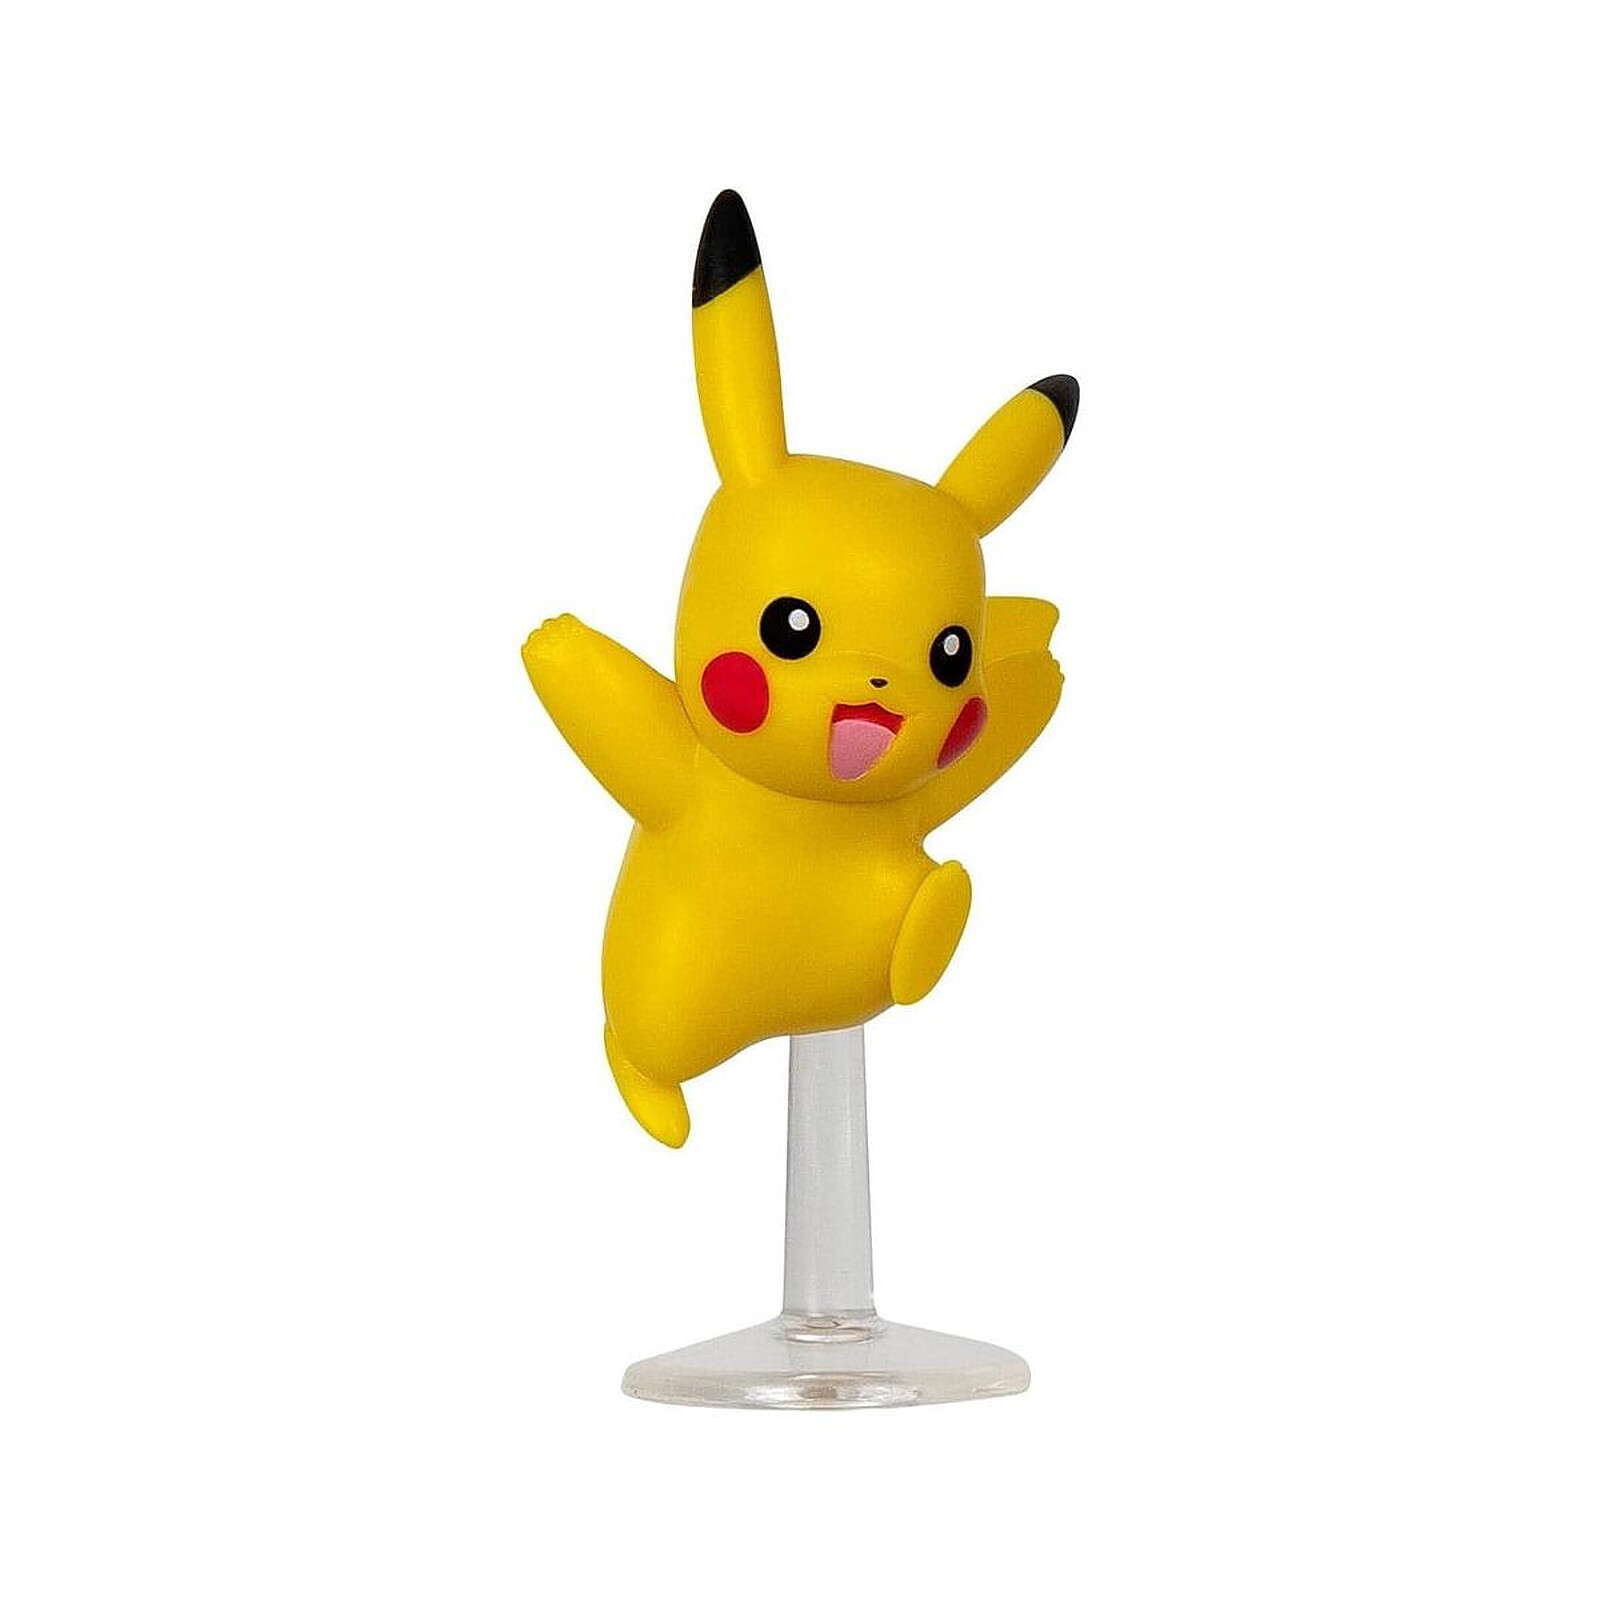 Pokémon - Figurine POP! Glaceon (EMEA) 9 cm - Figurines - LDLC